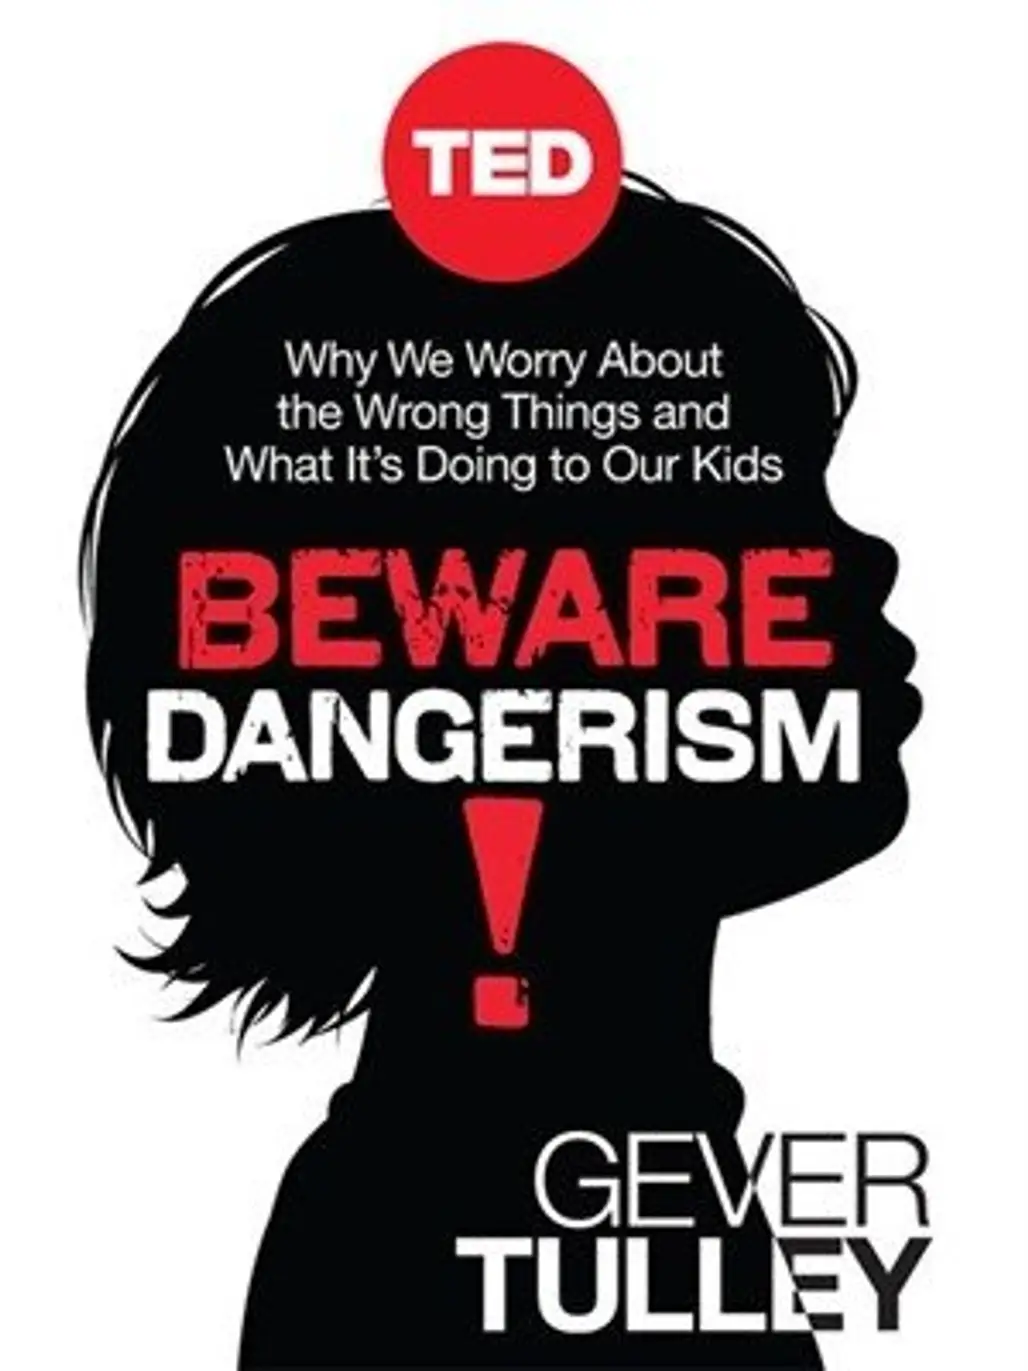 Beware Dangerism! by Gever Tulley